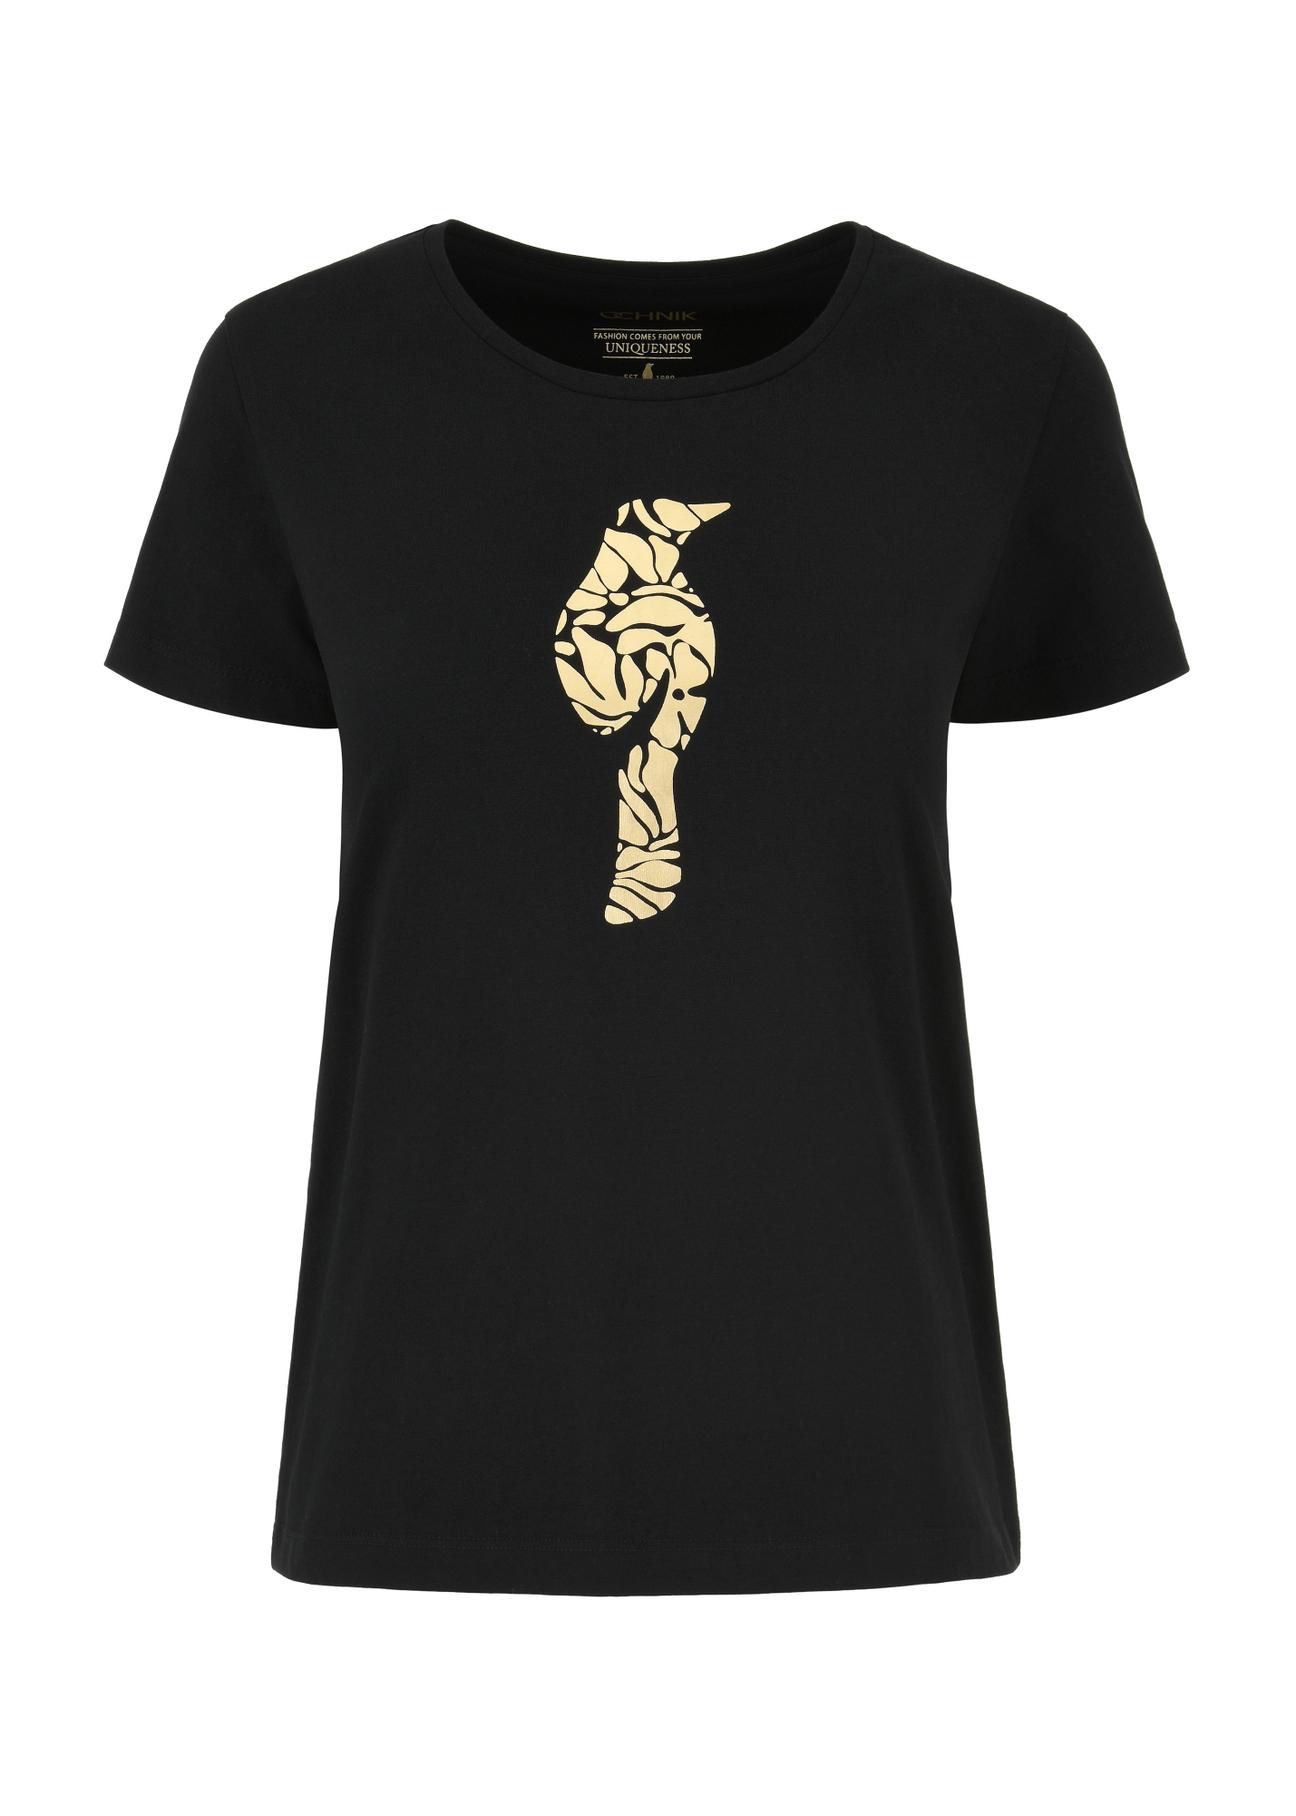 T-shirt damski czarny z wilgą TSHDT-0124-99(W24)